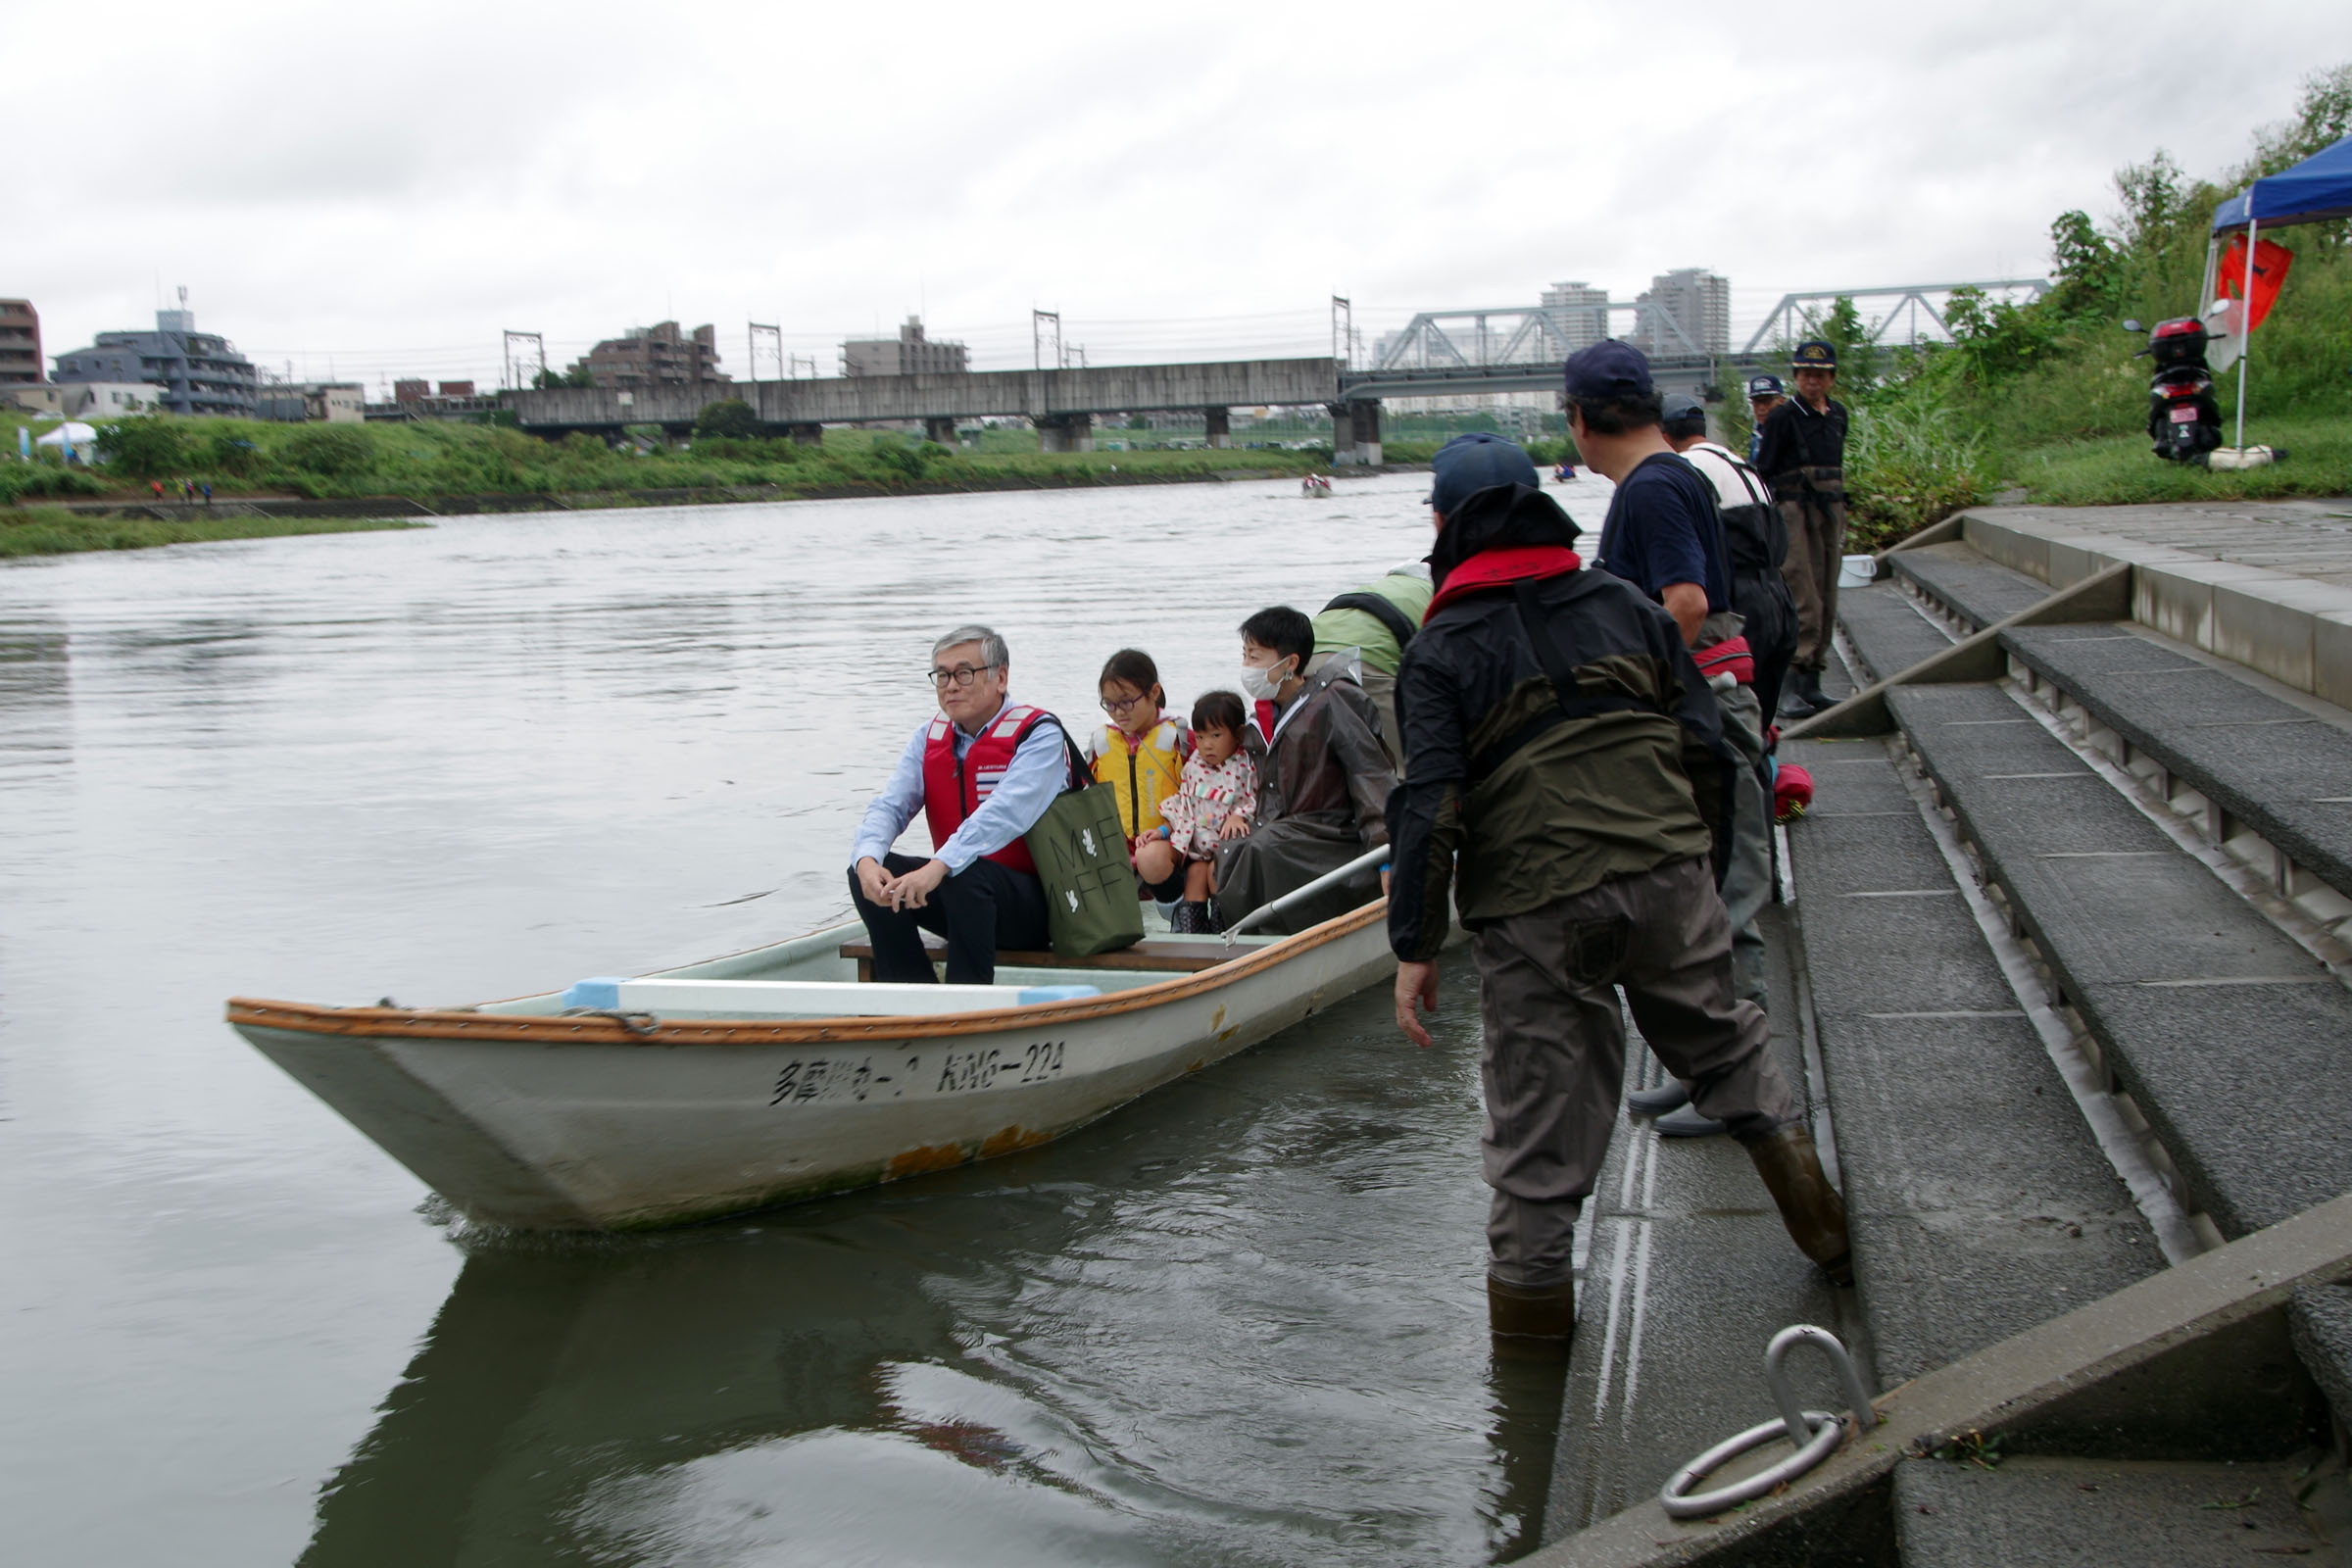 丸子の渡し祭り・多摩川で和むe体験